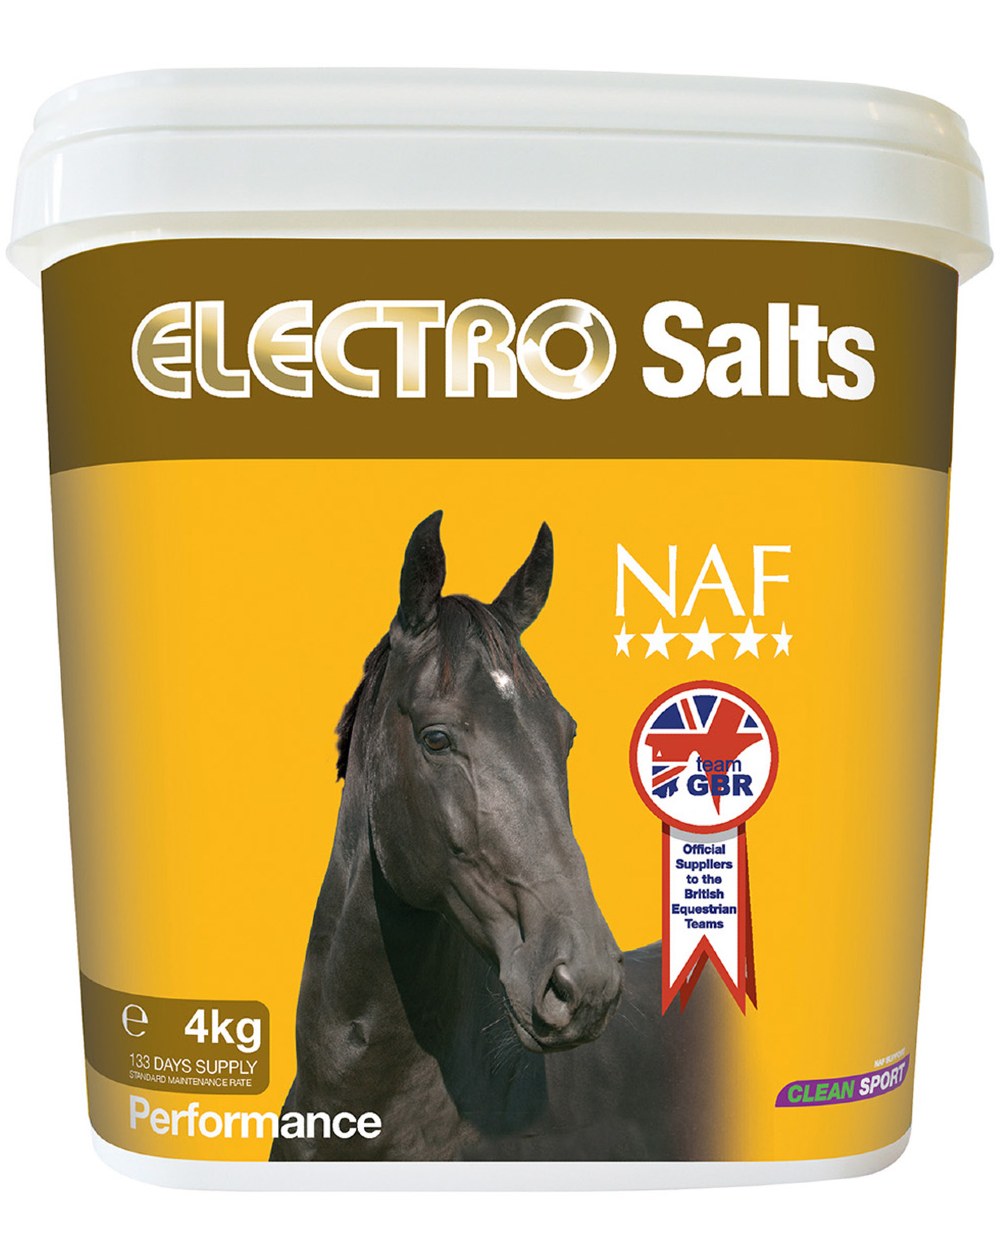 NAF Electro Salts 4kg on white background